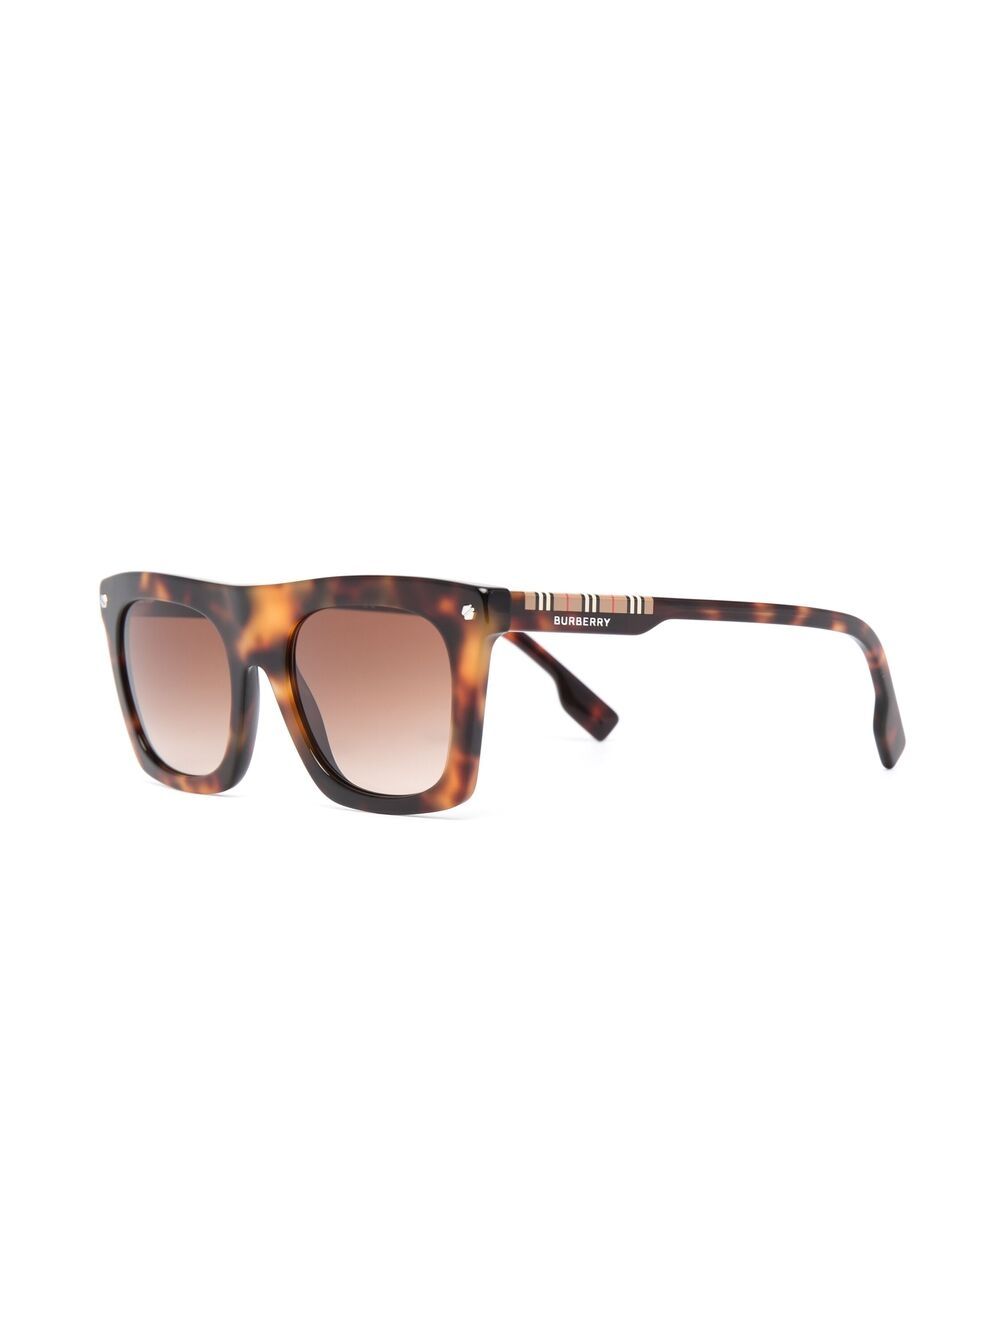 фото Burberry eyewear солнцезащитные очки в оправе черепаховой расцветки